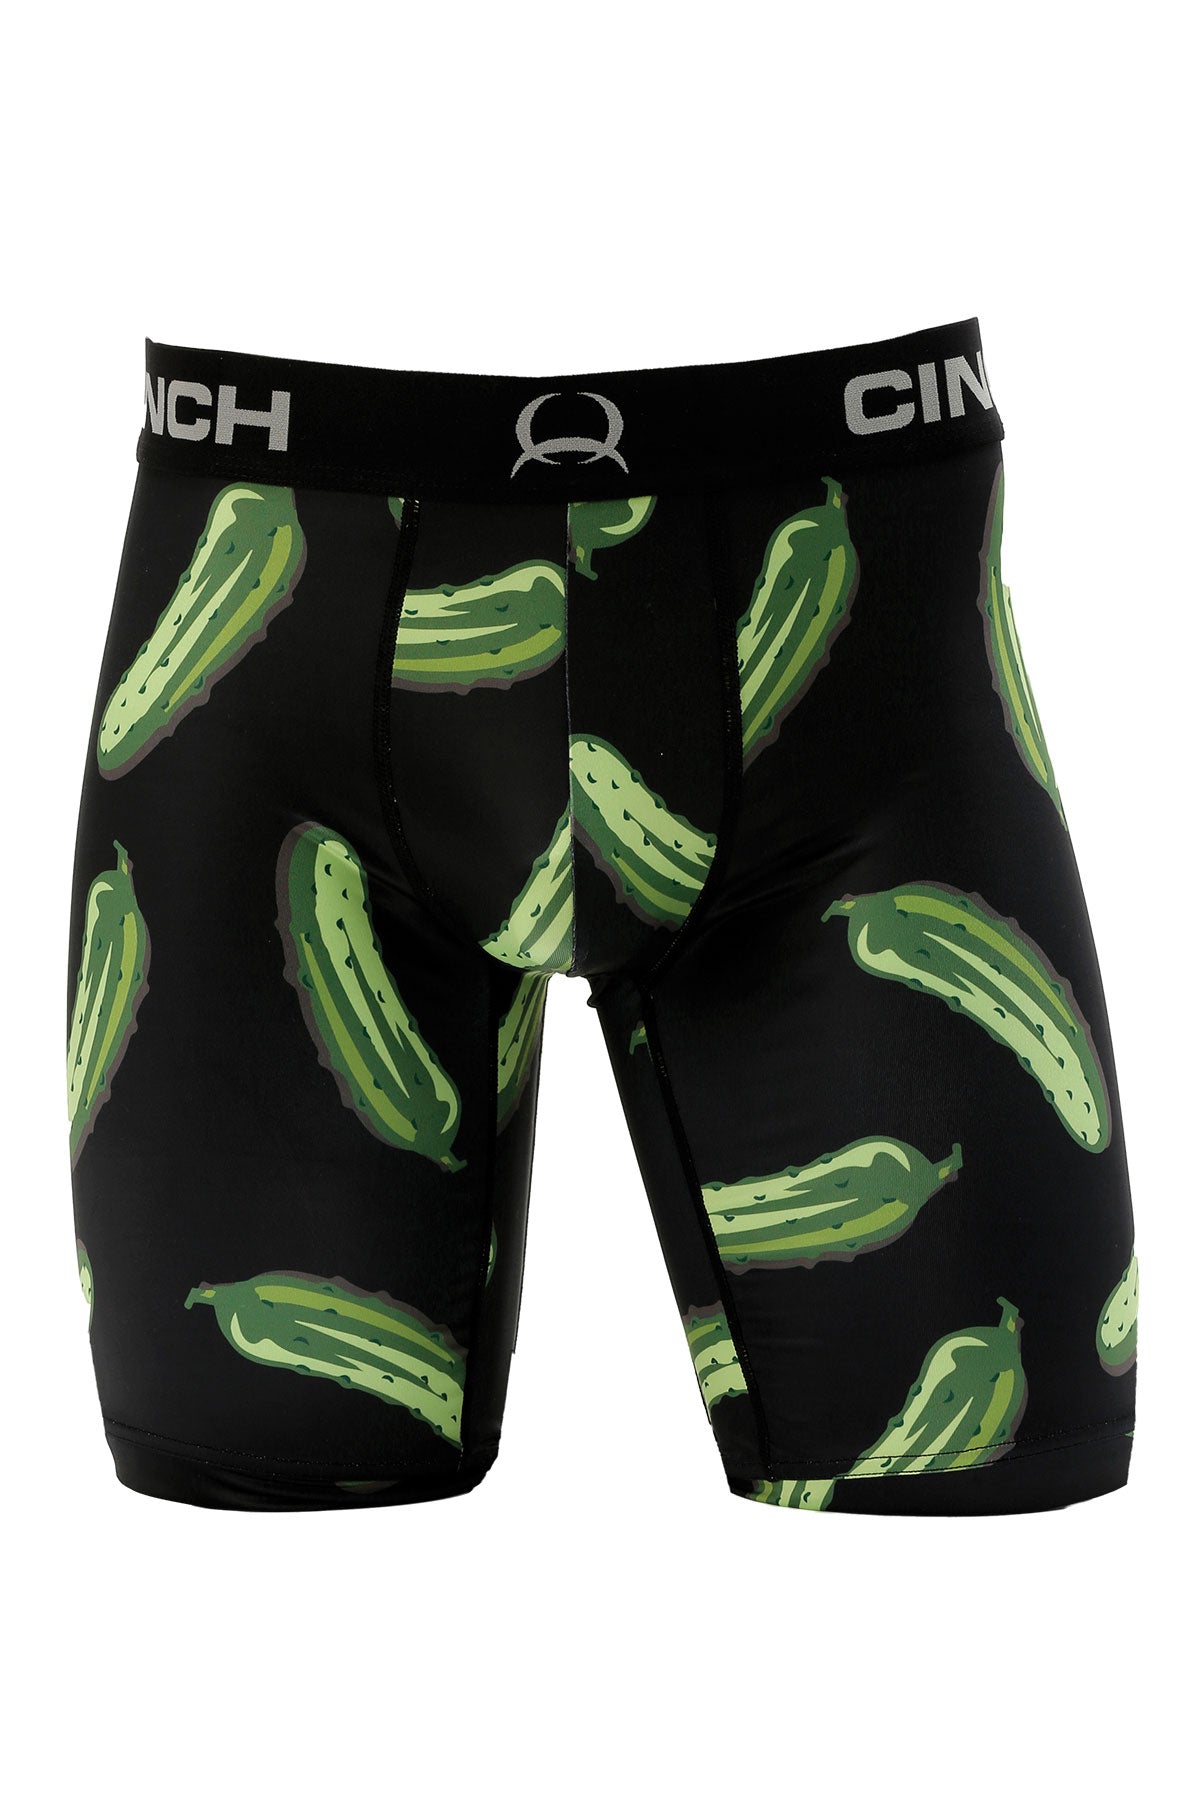 Cinch Men's Croc Underwear Boxer Briefs